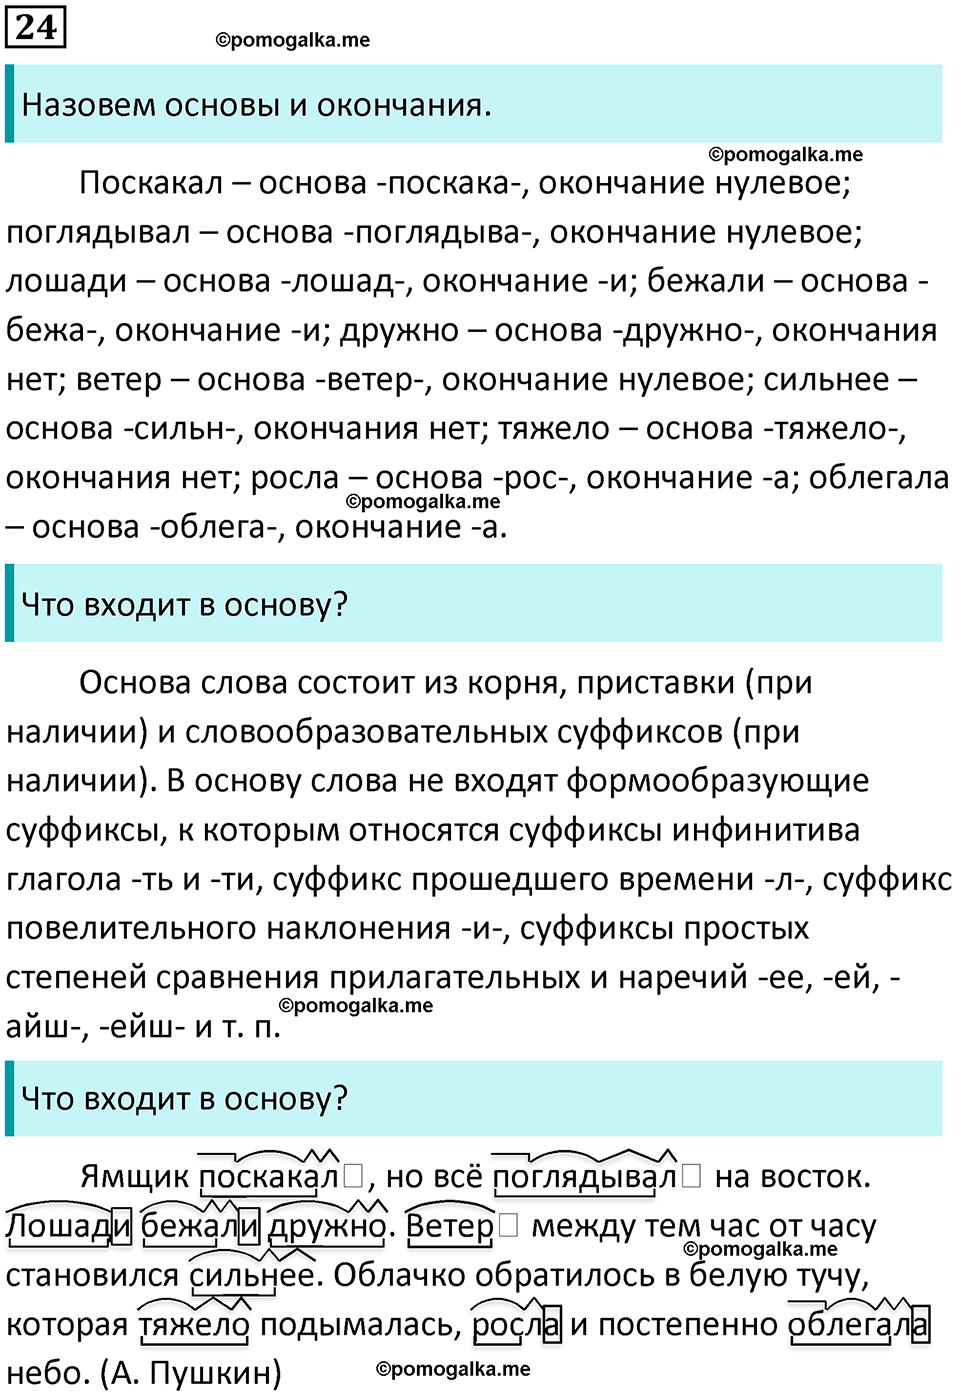 разбор упражнения №24 русский язык 8 класс Бархударов 2023 год